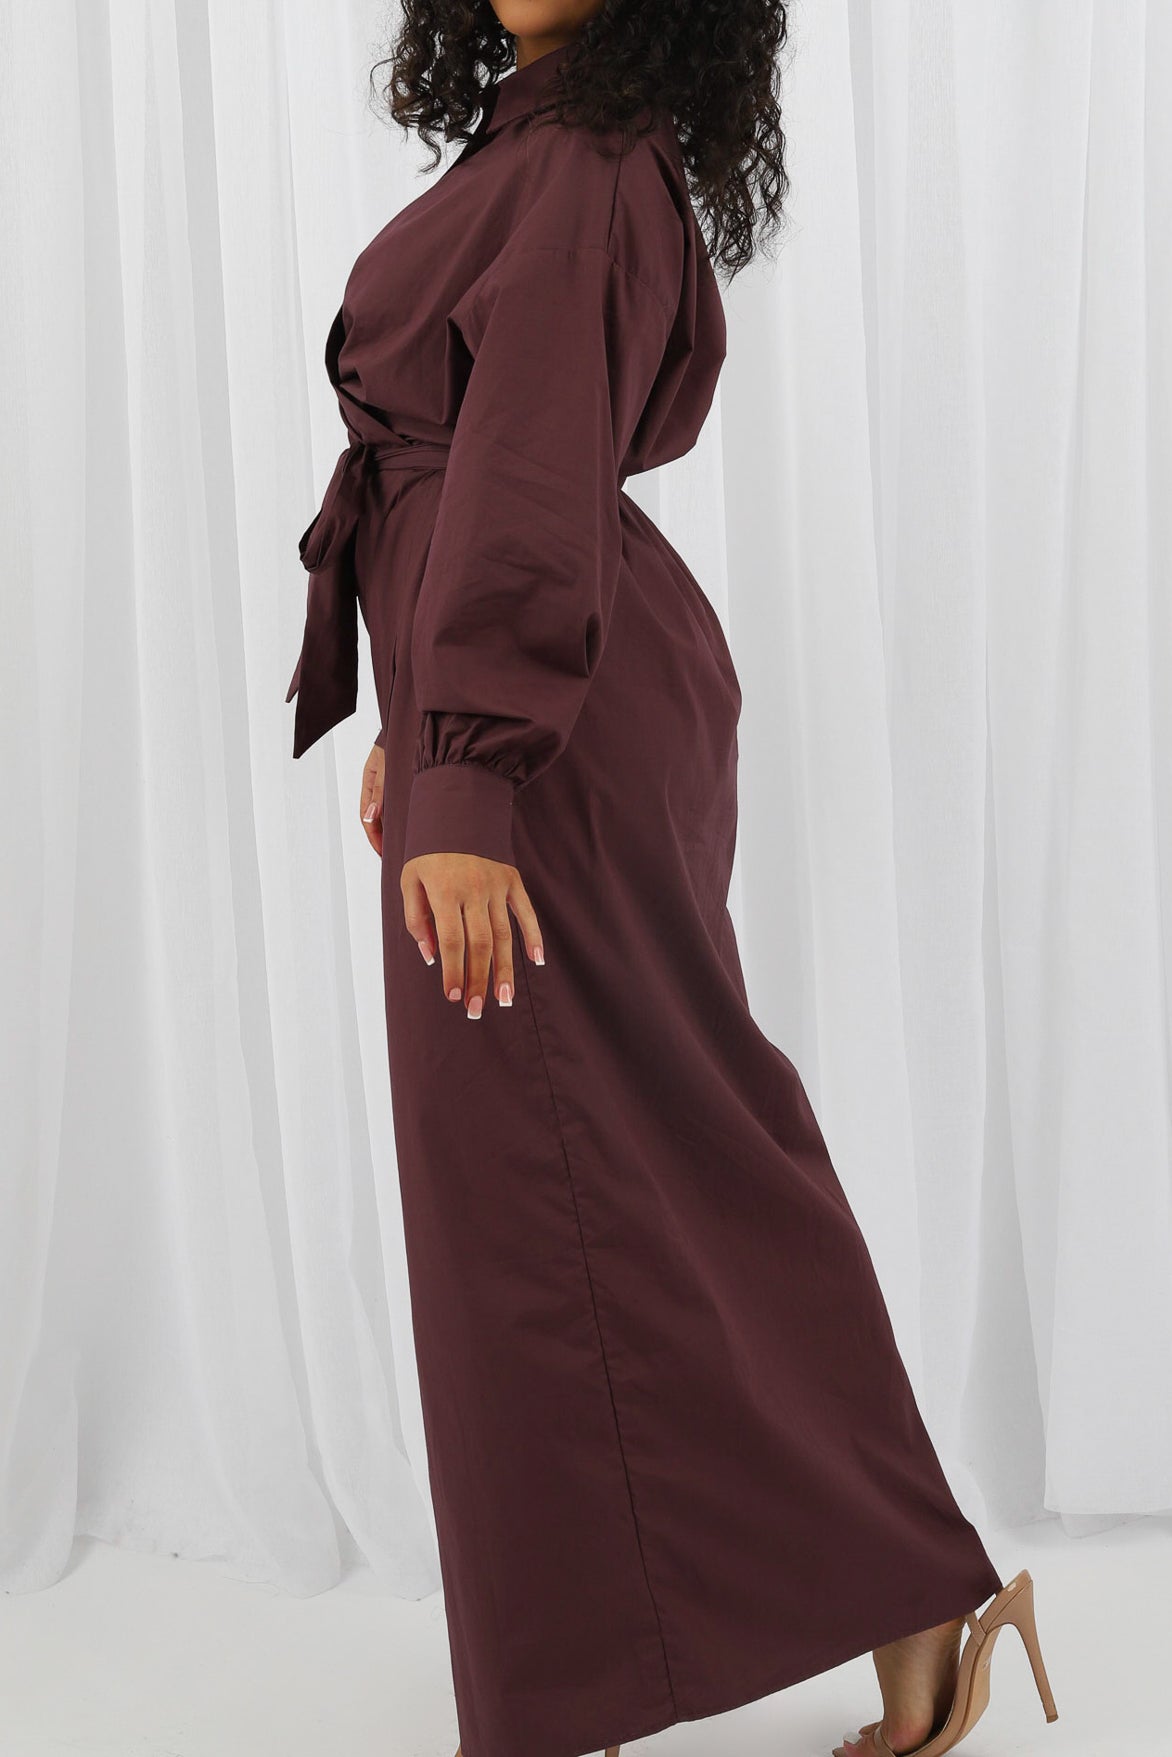 M7852Burgundy-dress-abaya